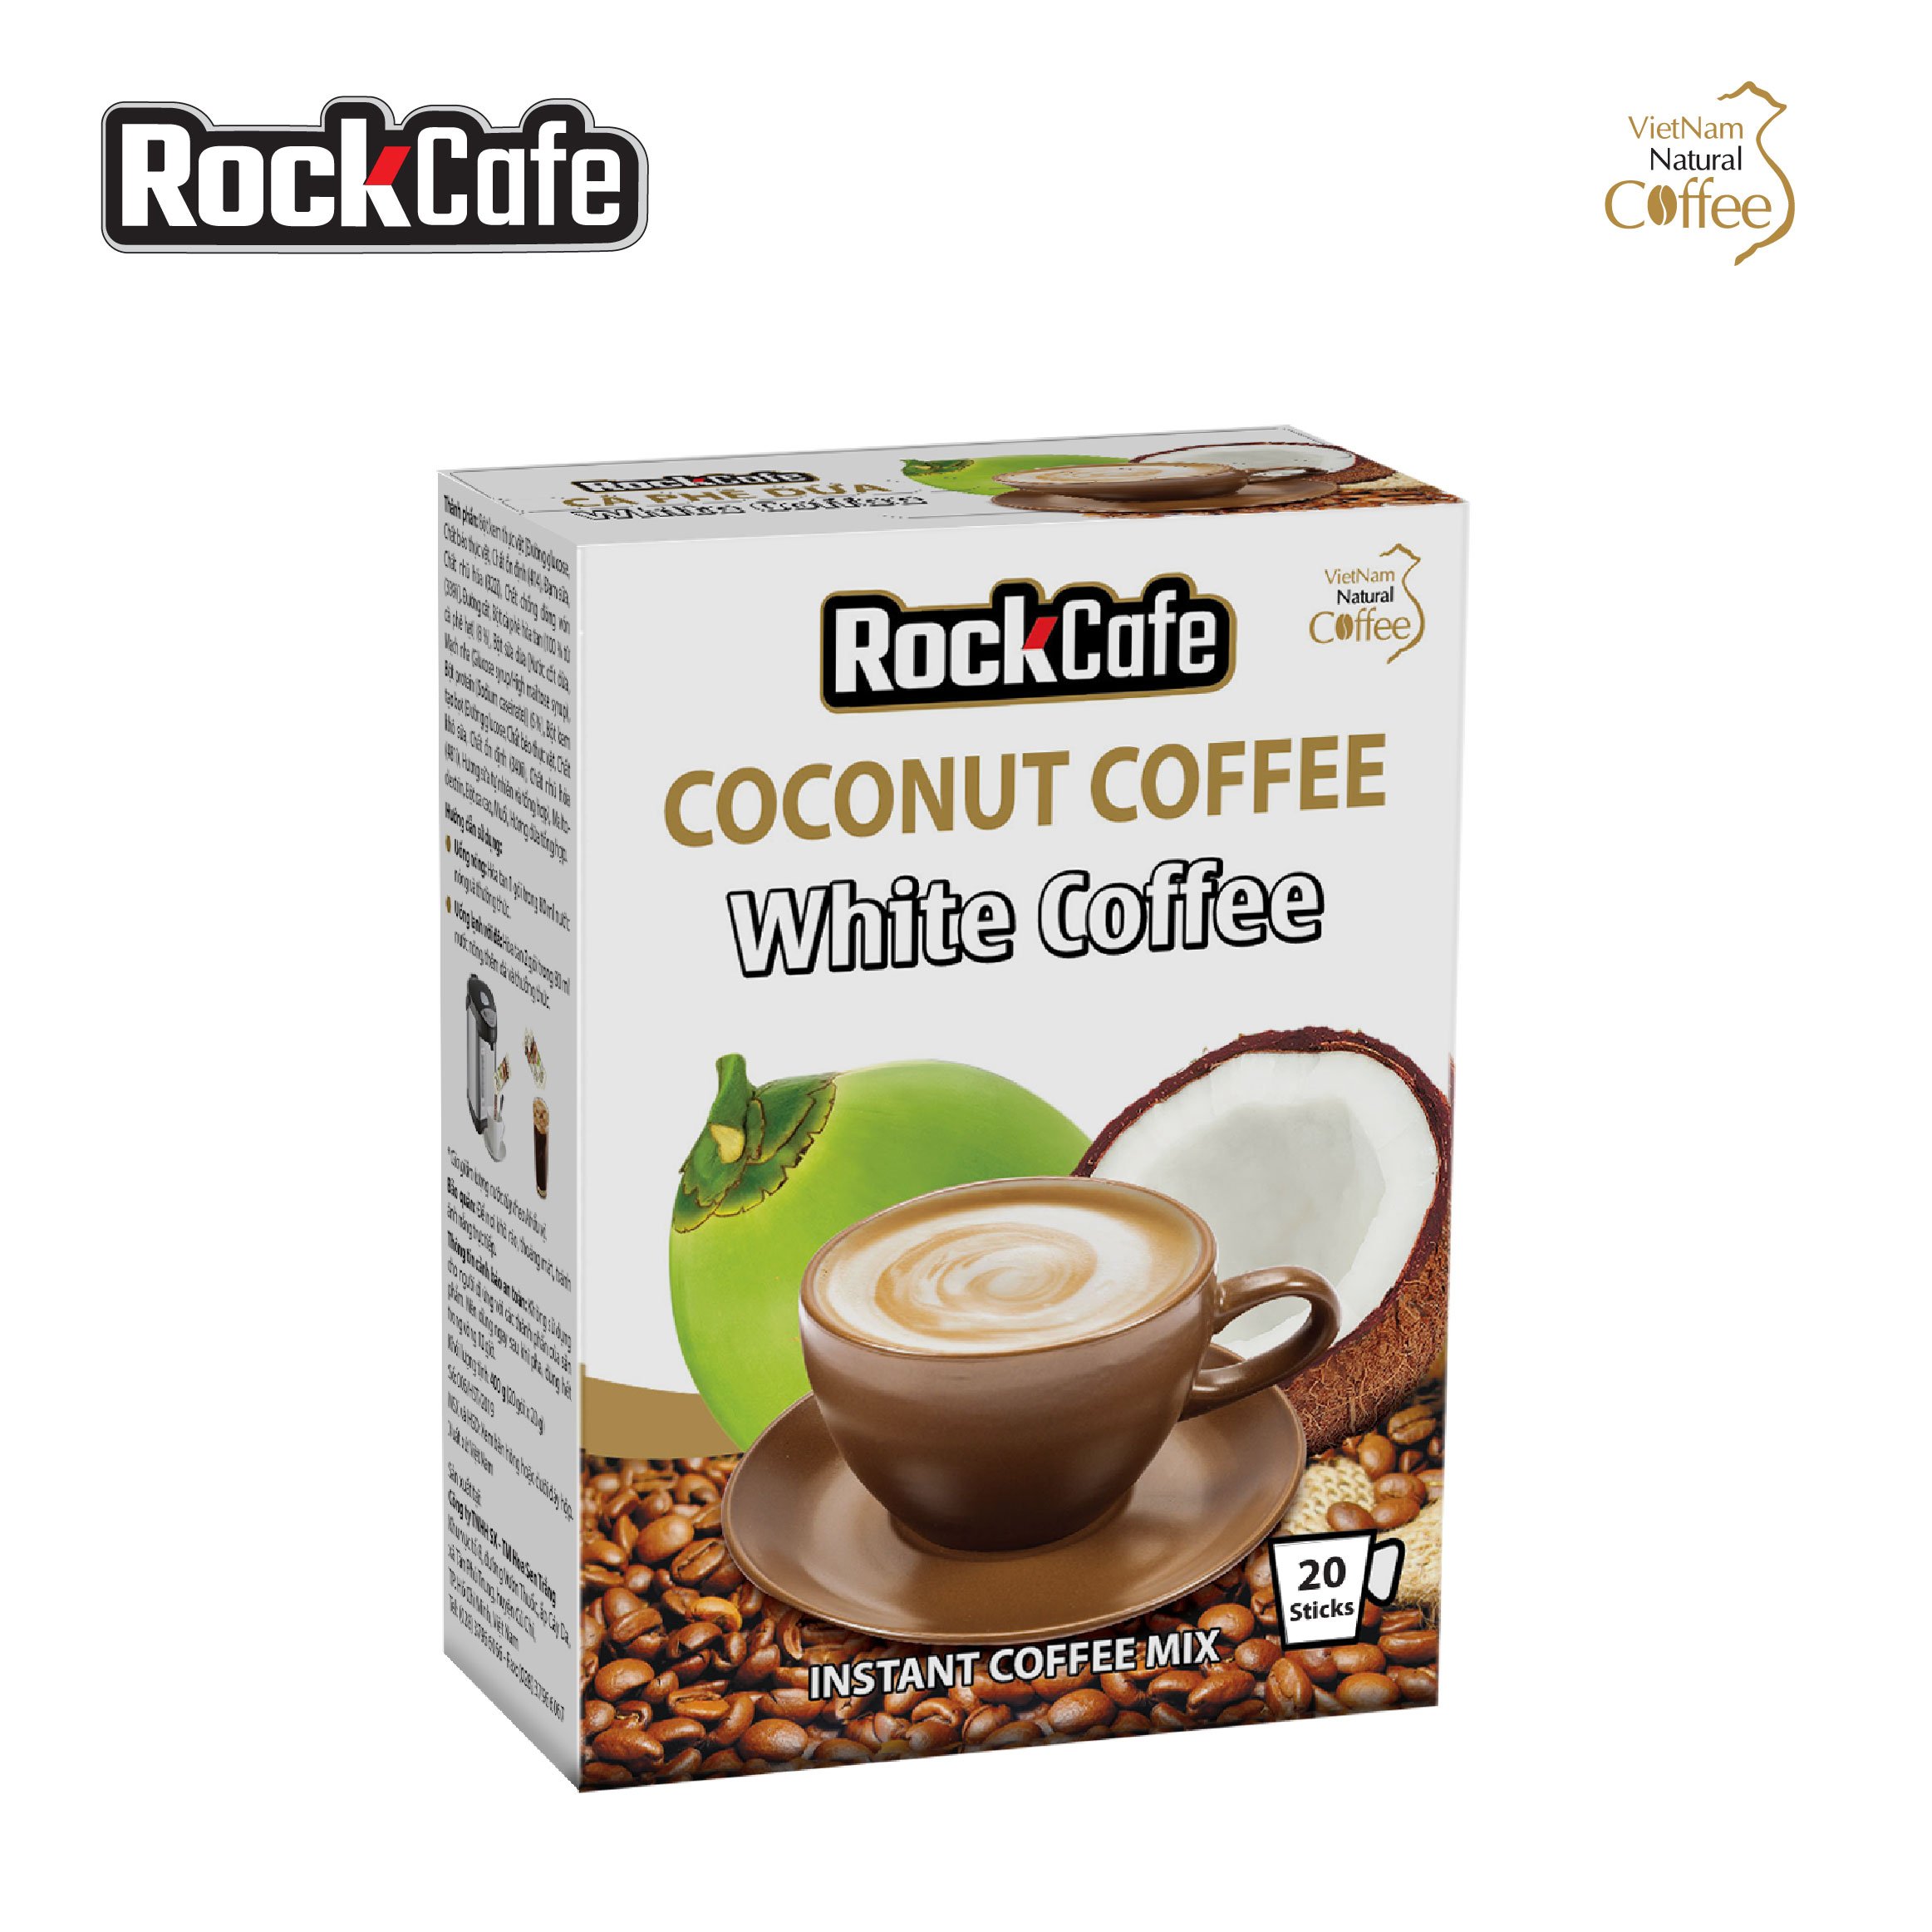 Cà phê dừa ROCKCAFE (Hộp 20 gói)